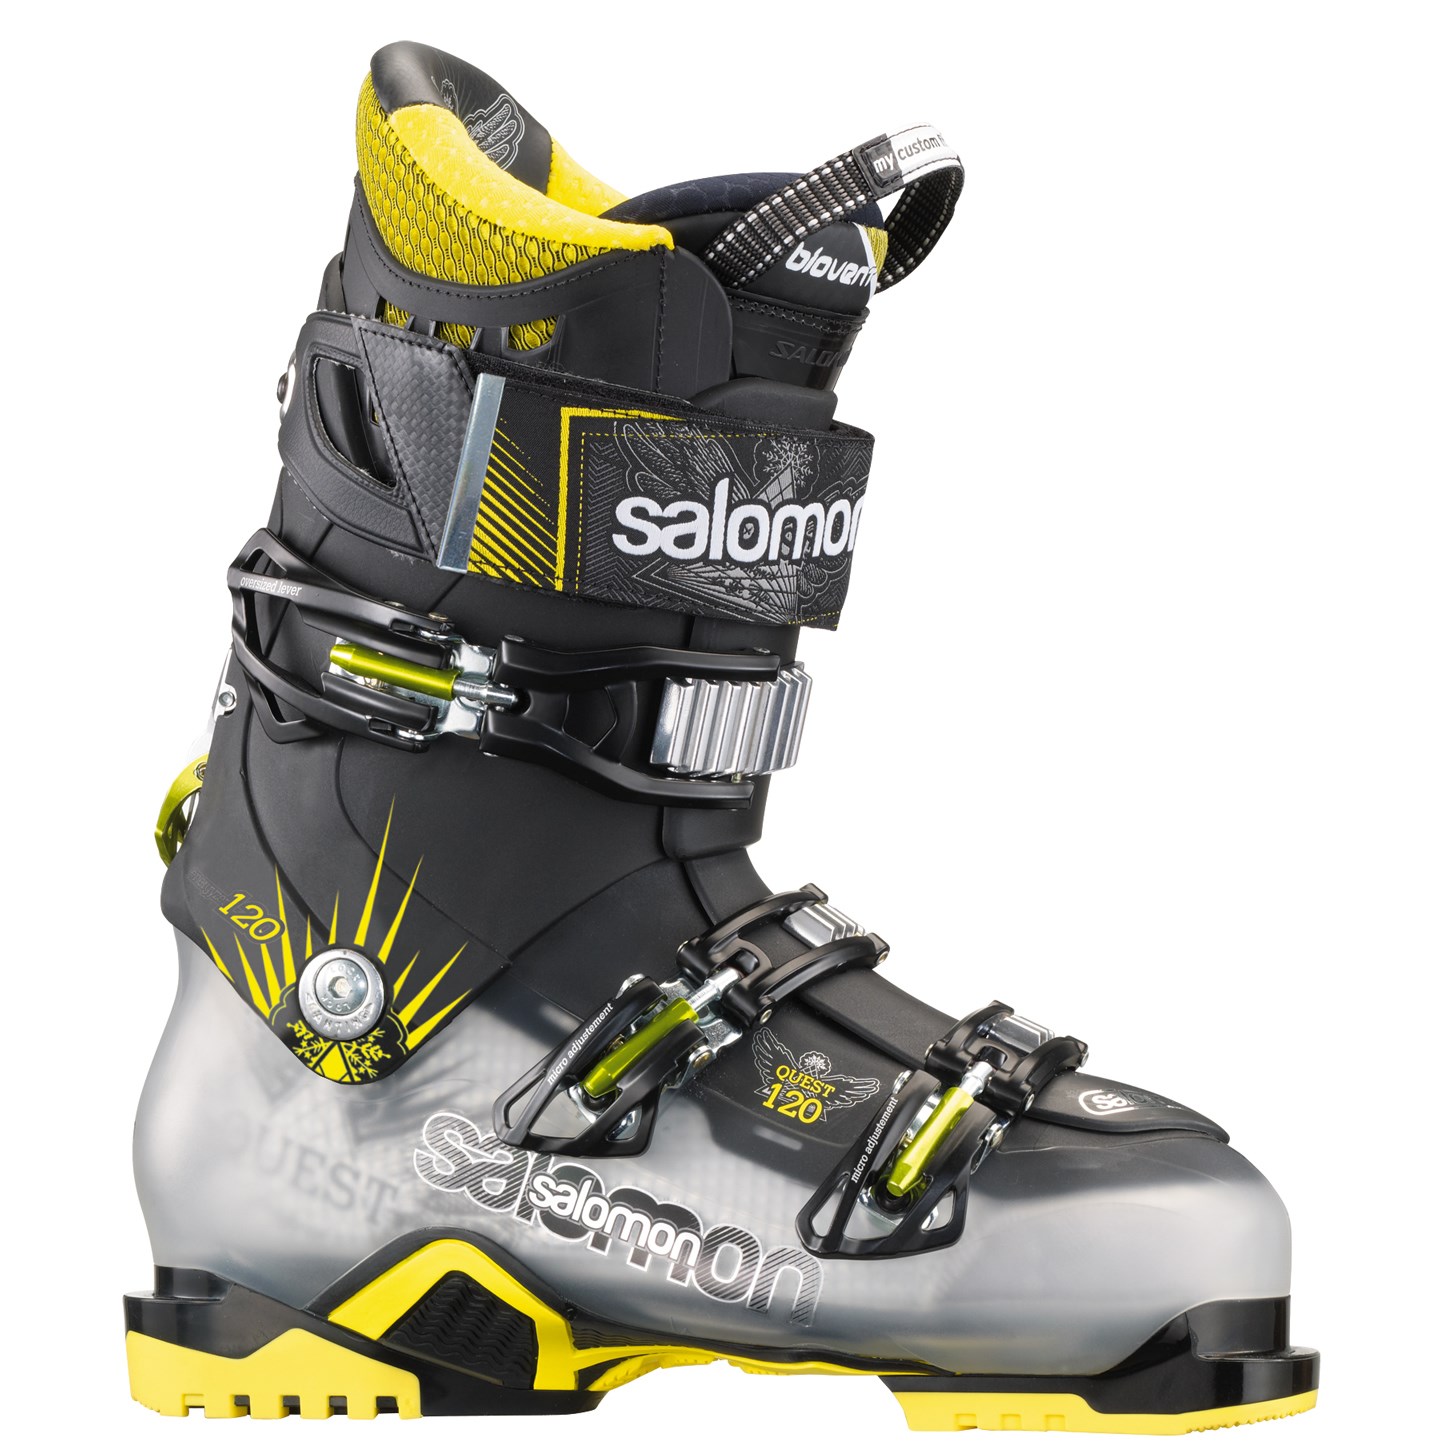 Voorwaarden Kapper fantoom Salomon Quest 120 Ski Boots 2014 | evo